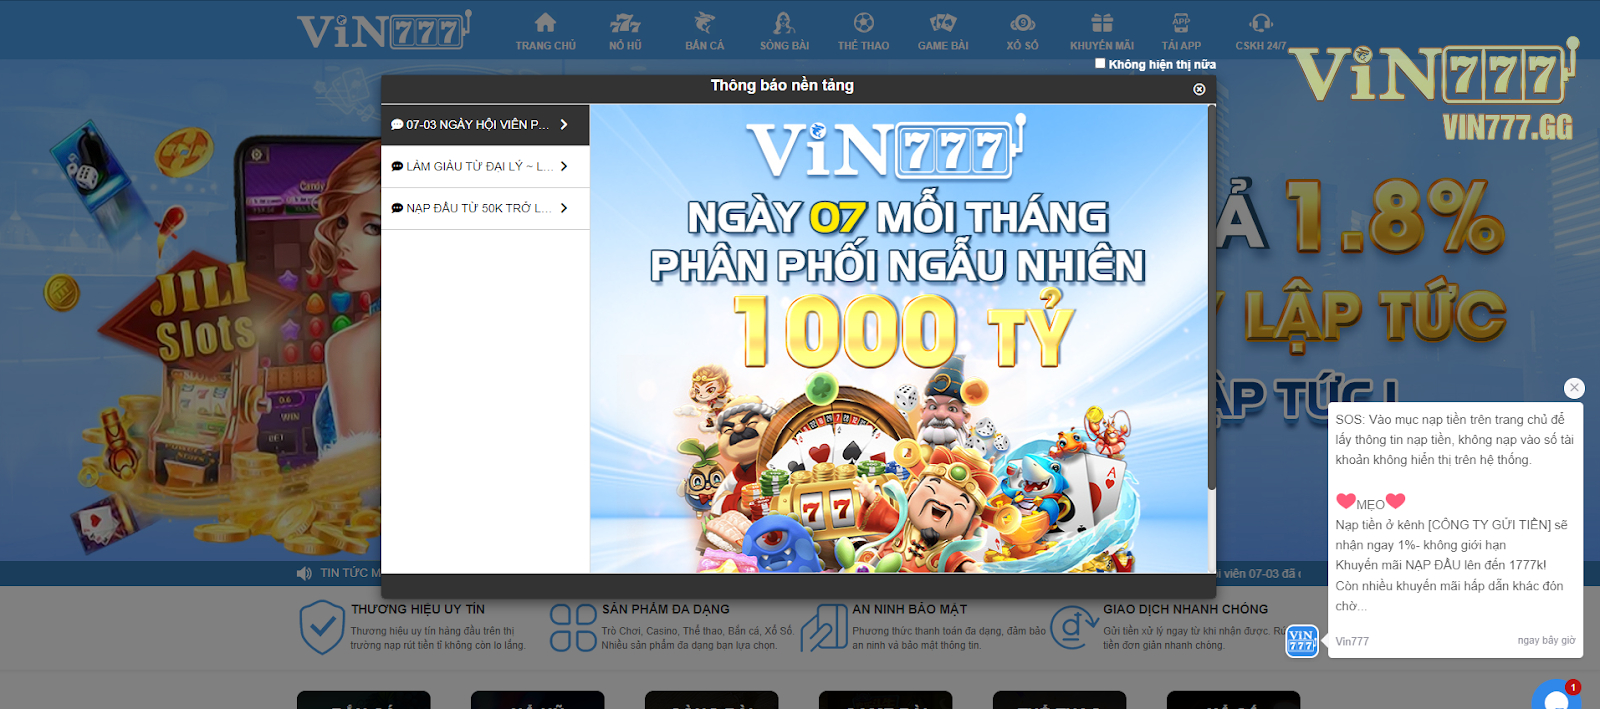 Có thể dùng tài khoản đăng nhập Vin777 ở đâu?